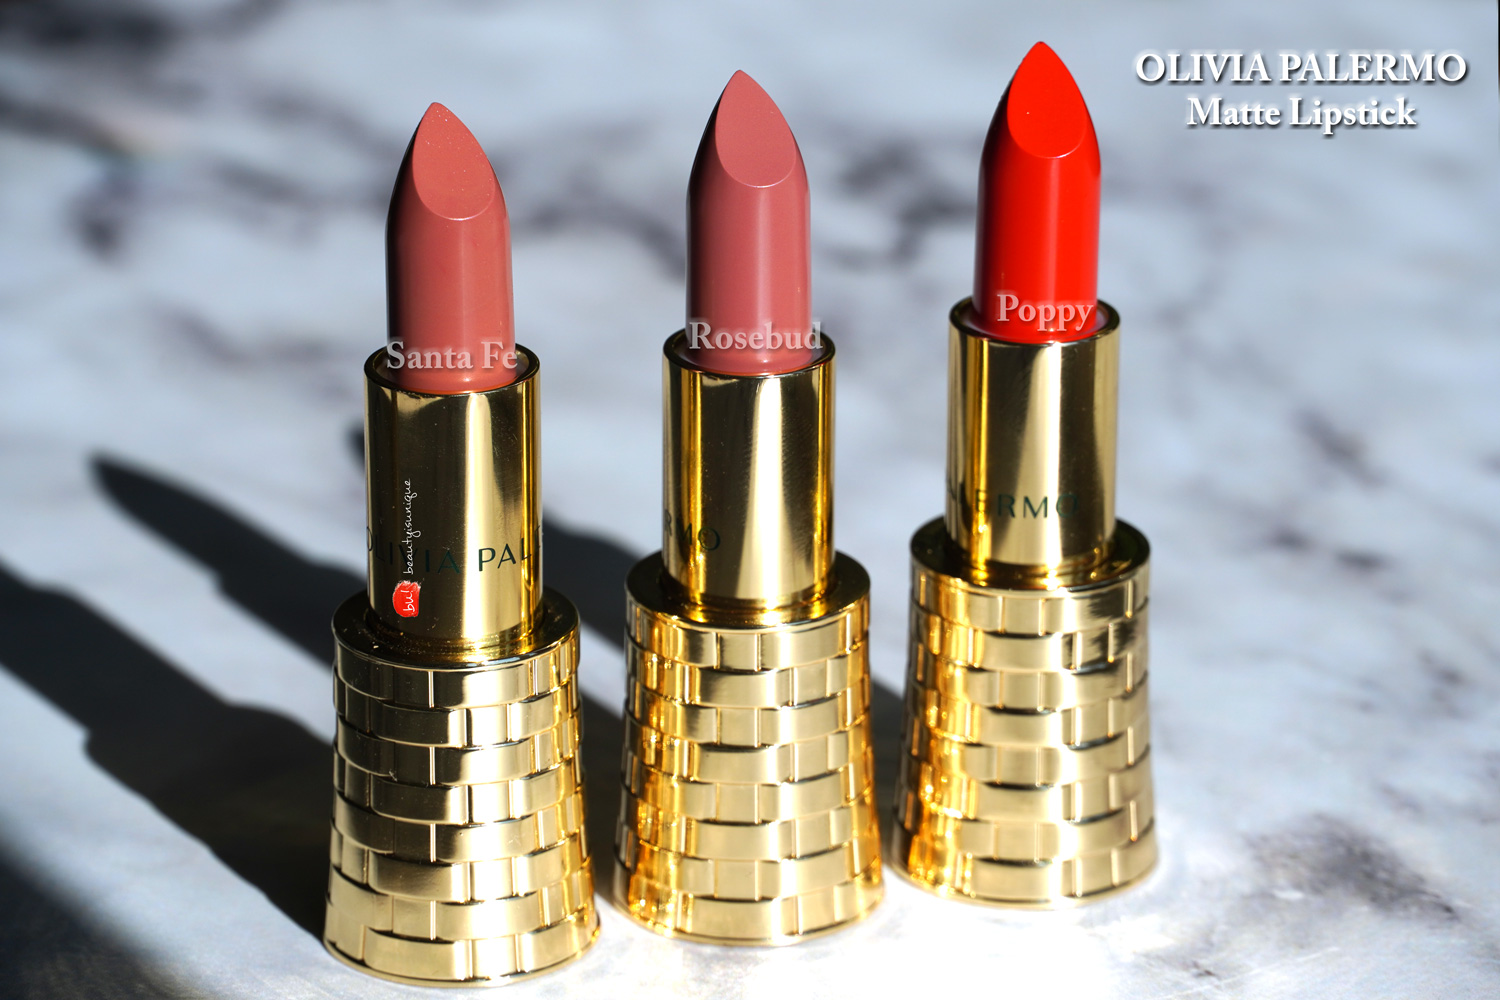 Olivia-palermo-matte-lipstick-santa-fe